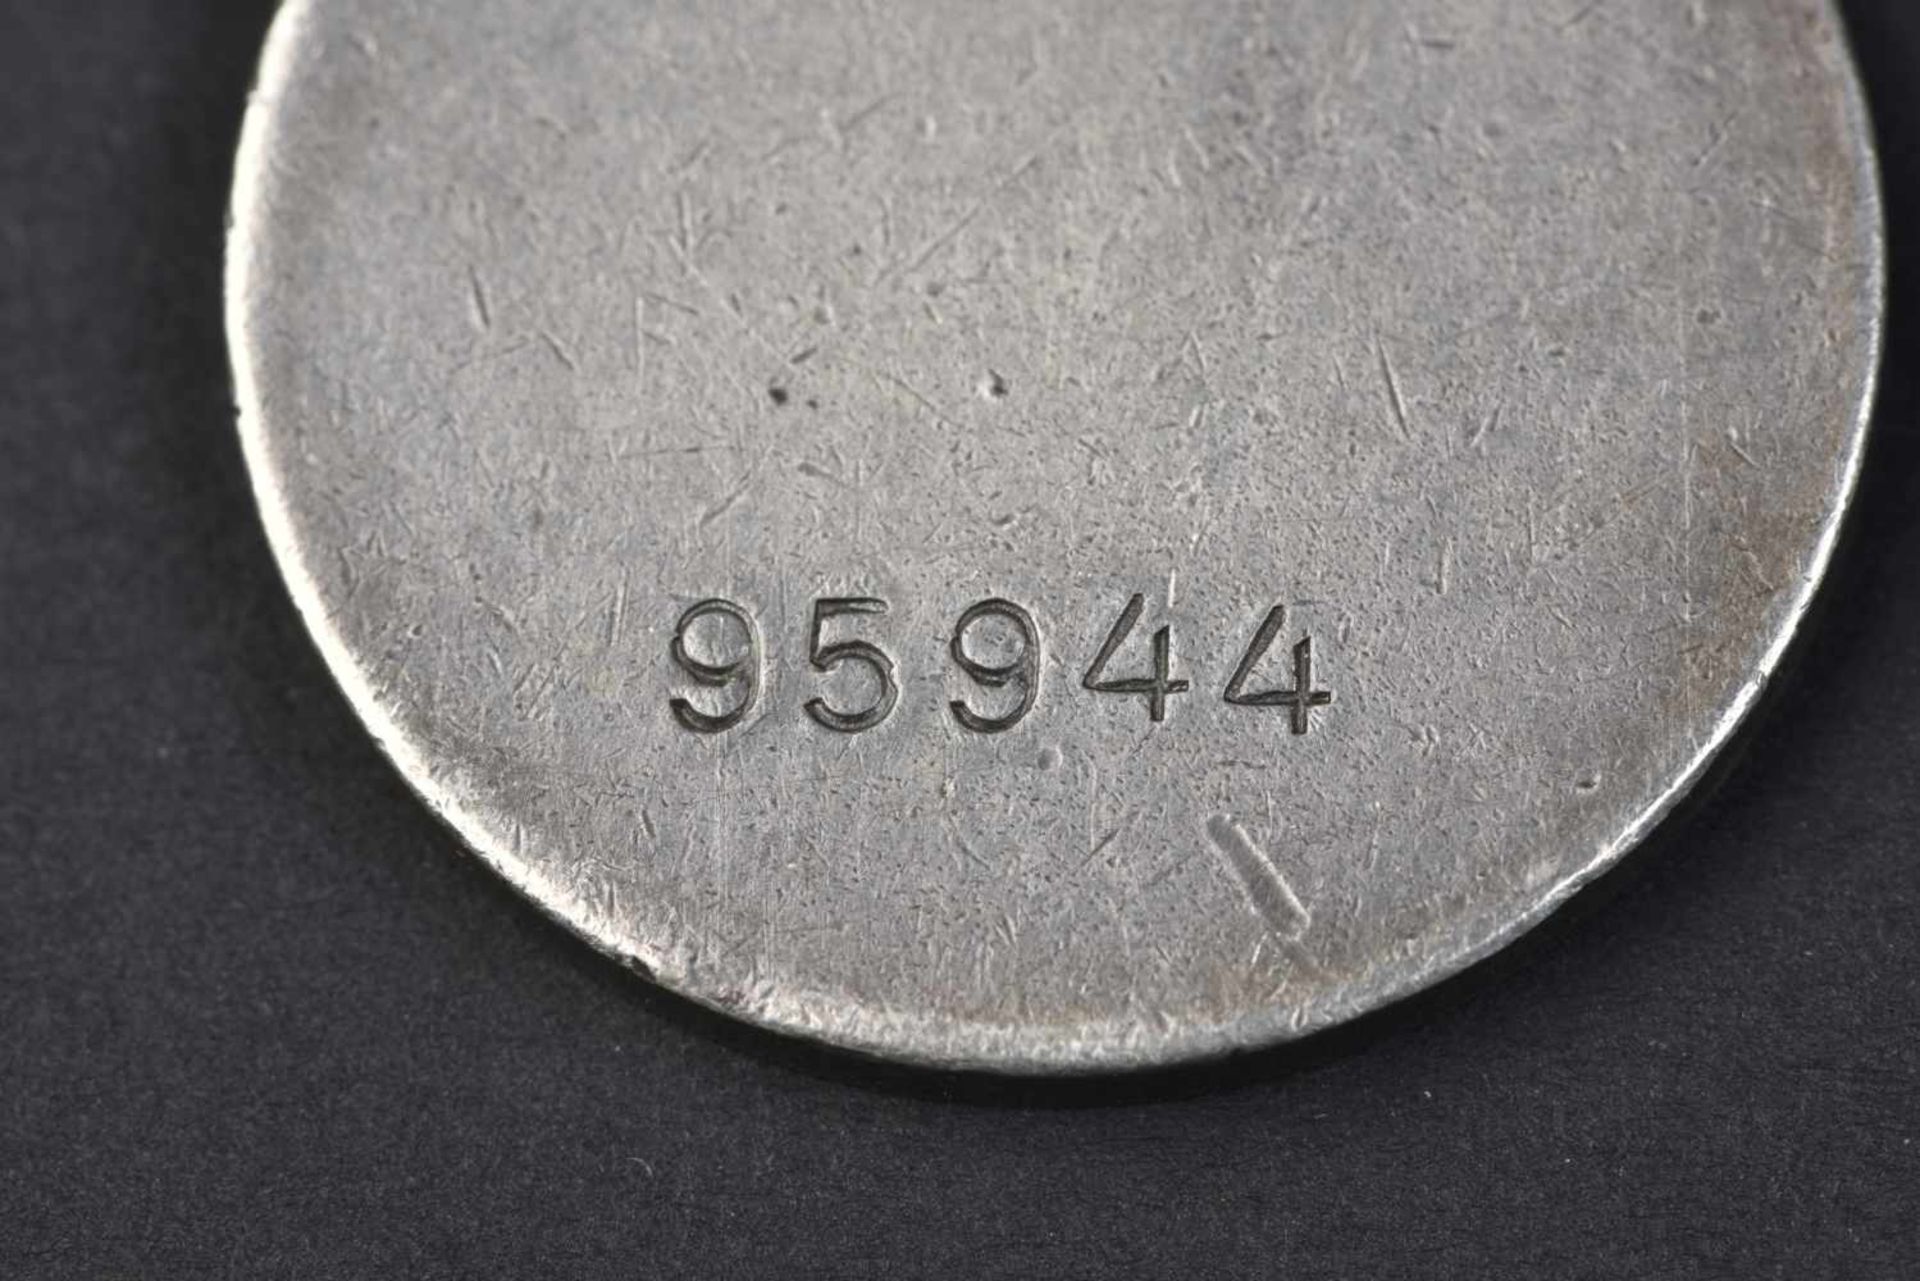 Médaille pour le mérite au combat, type 1, n° 95944 attribuée le 22 septembre 1942 au Major AMELIN - Bild 3 aus 3